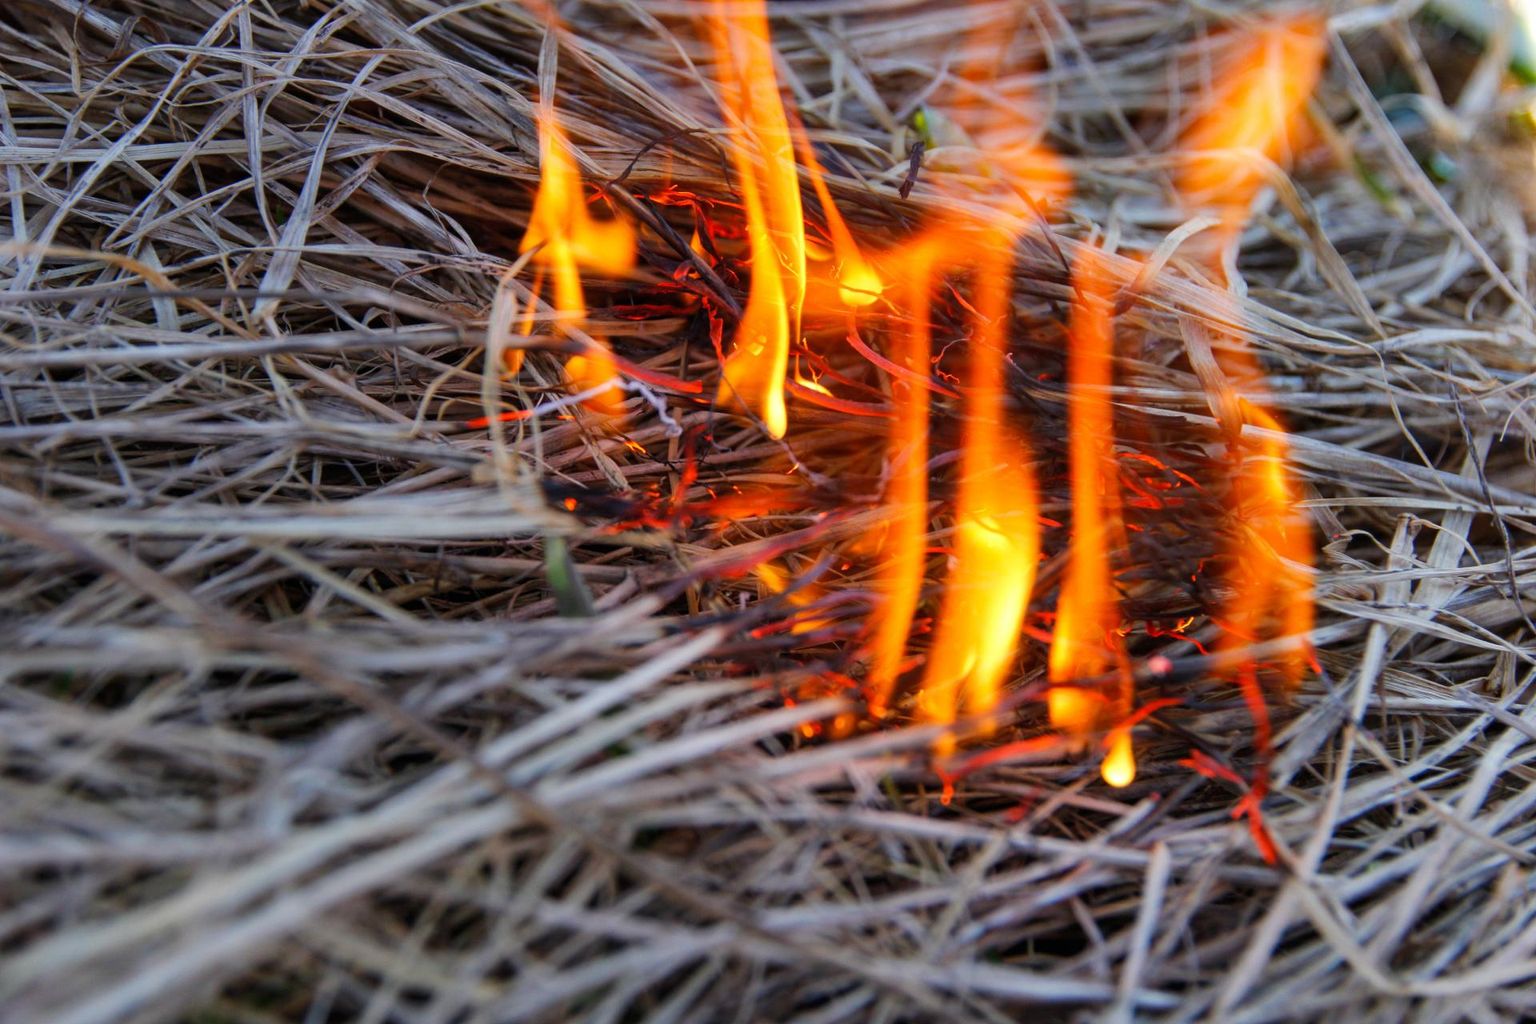 Kulu põletamine on Eestis aasta ringi keelatud.